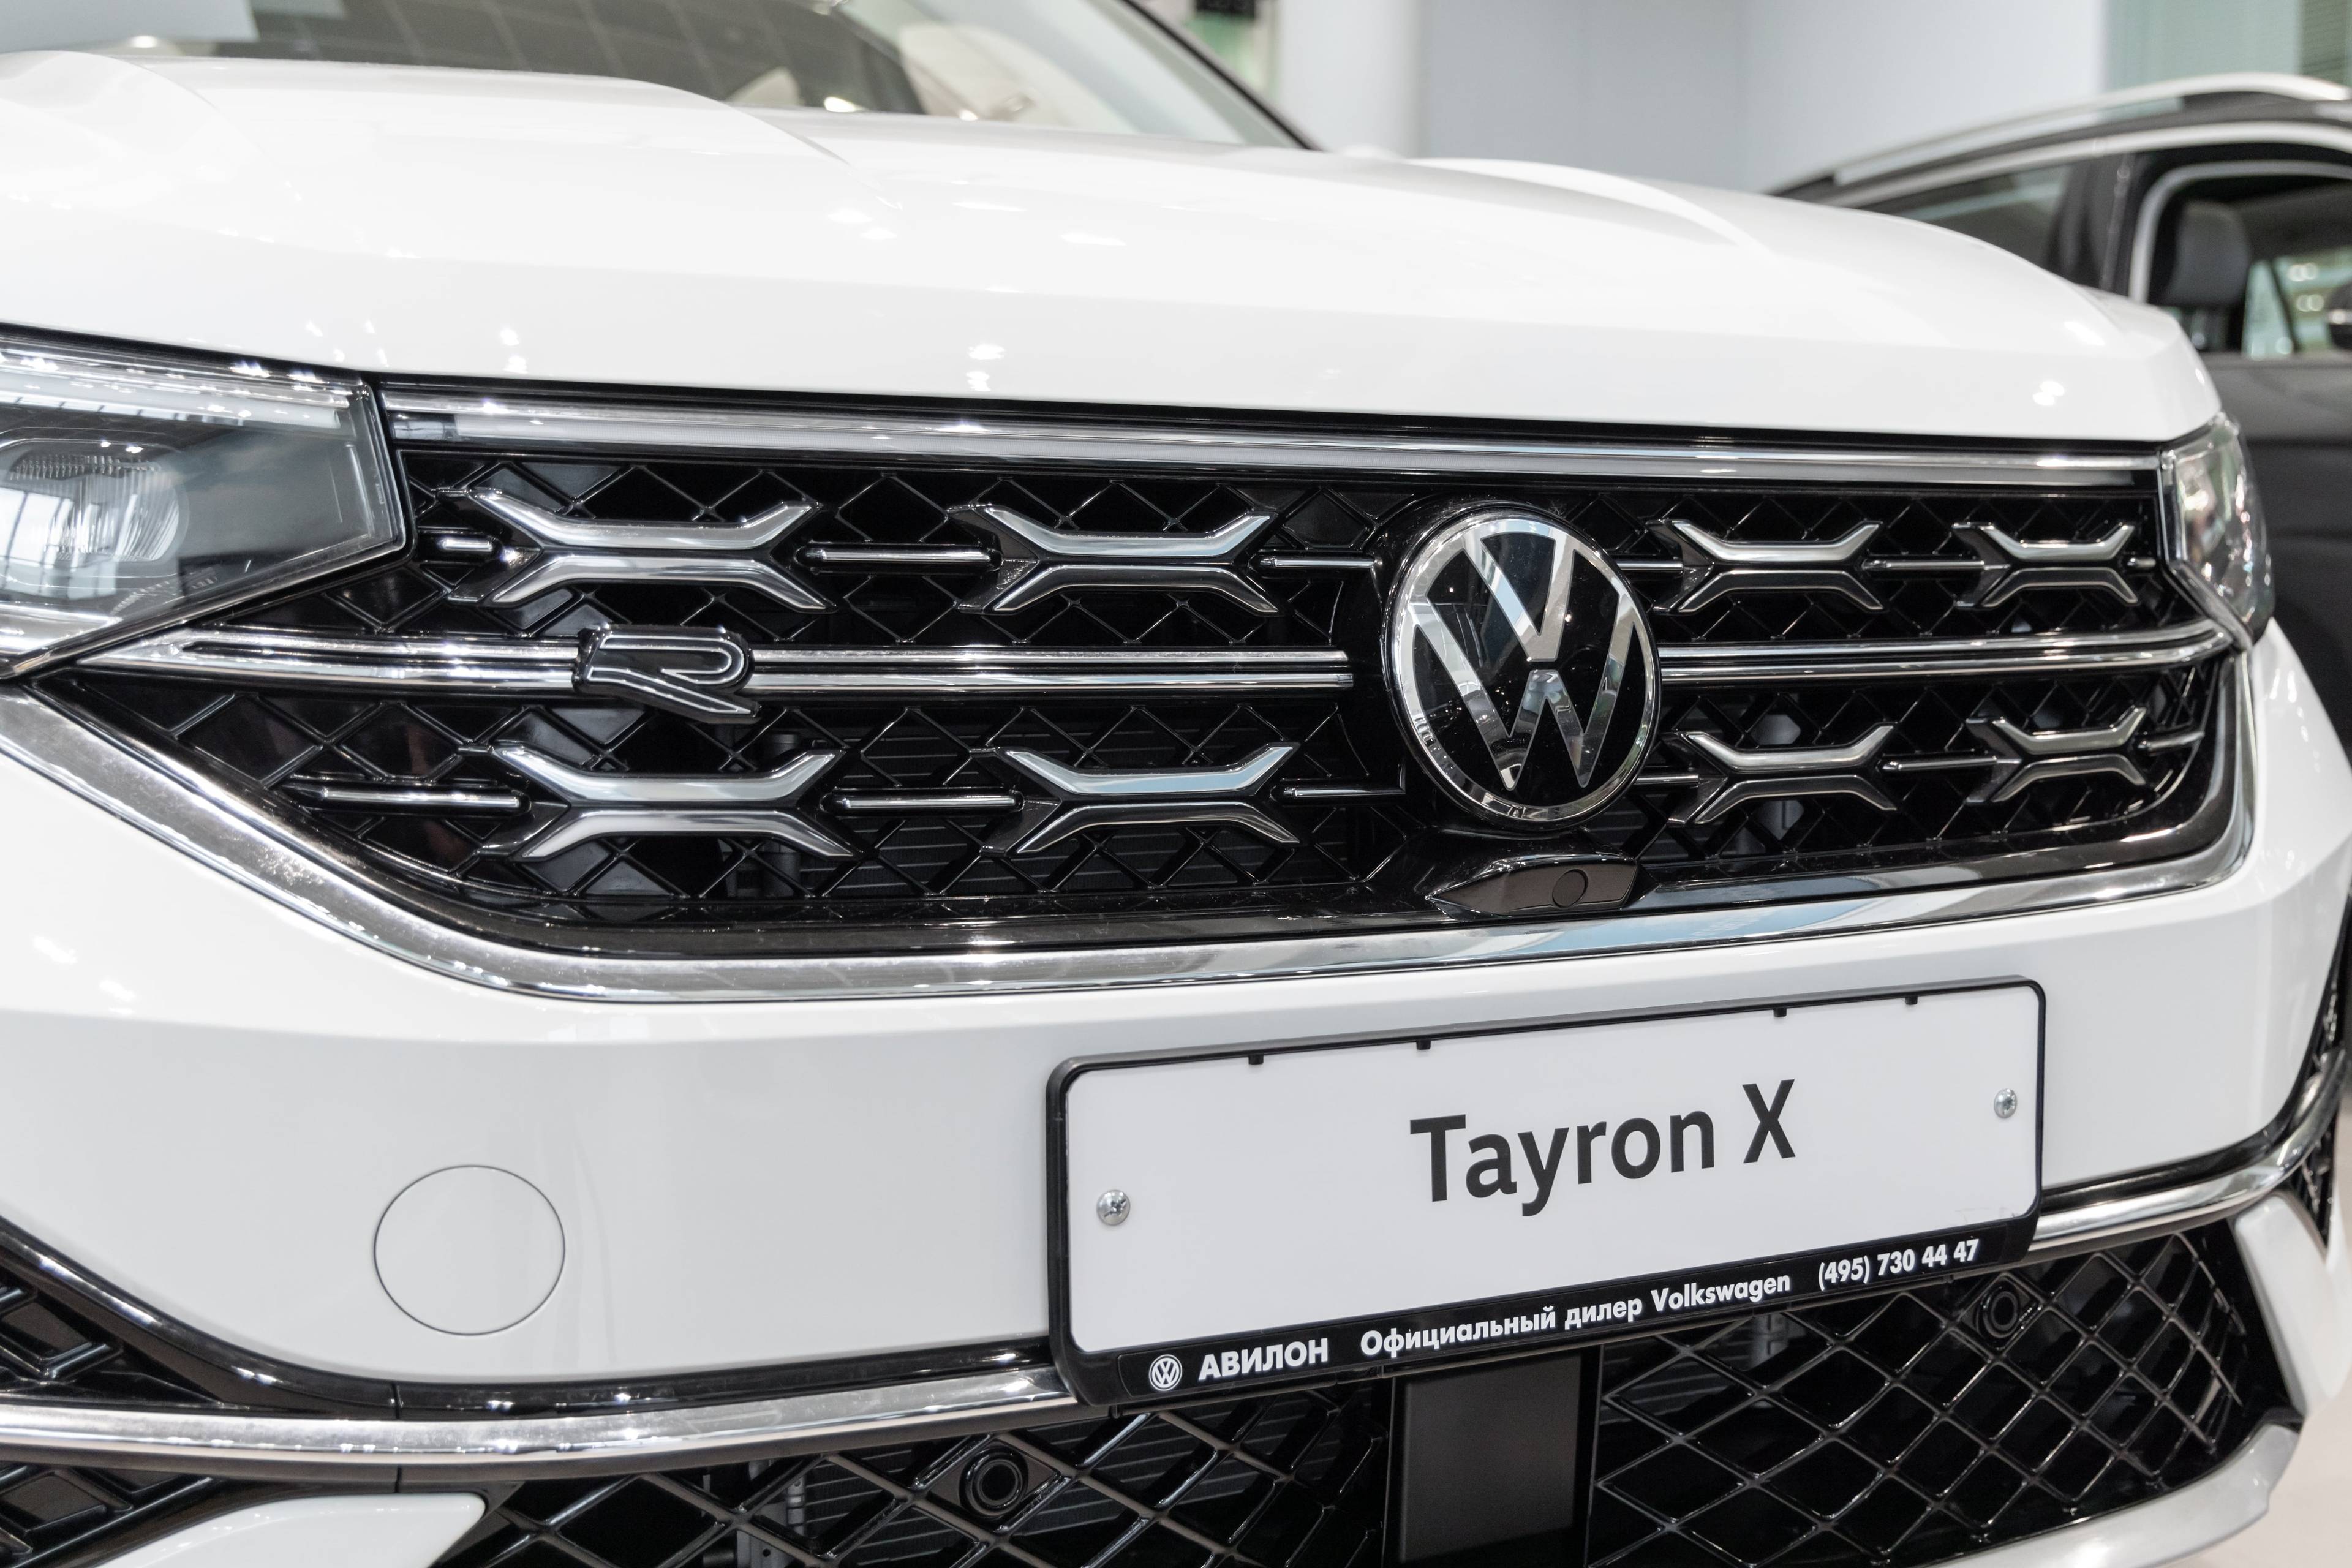 Volkswagen Tayron X Flagship Smart 380TSI 7AT 4Motion